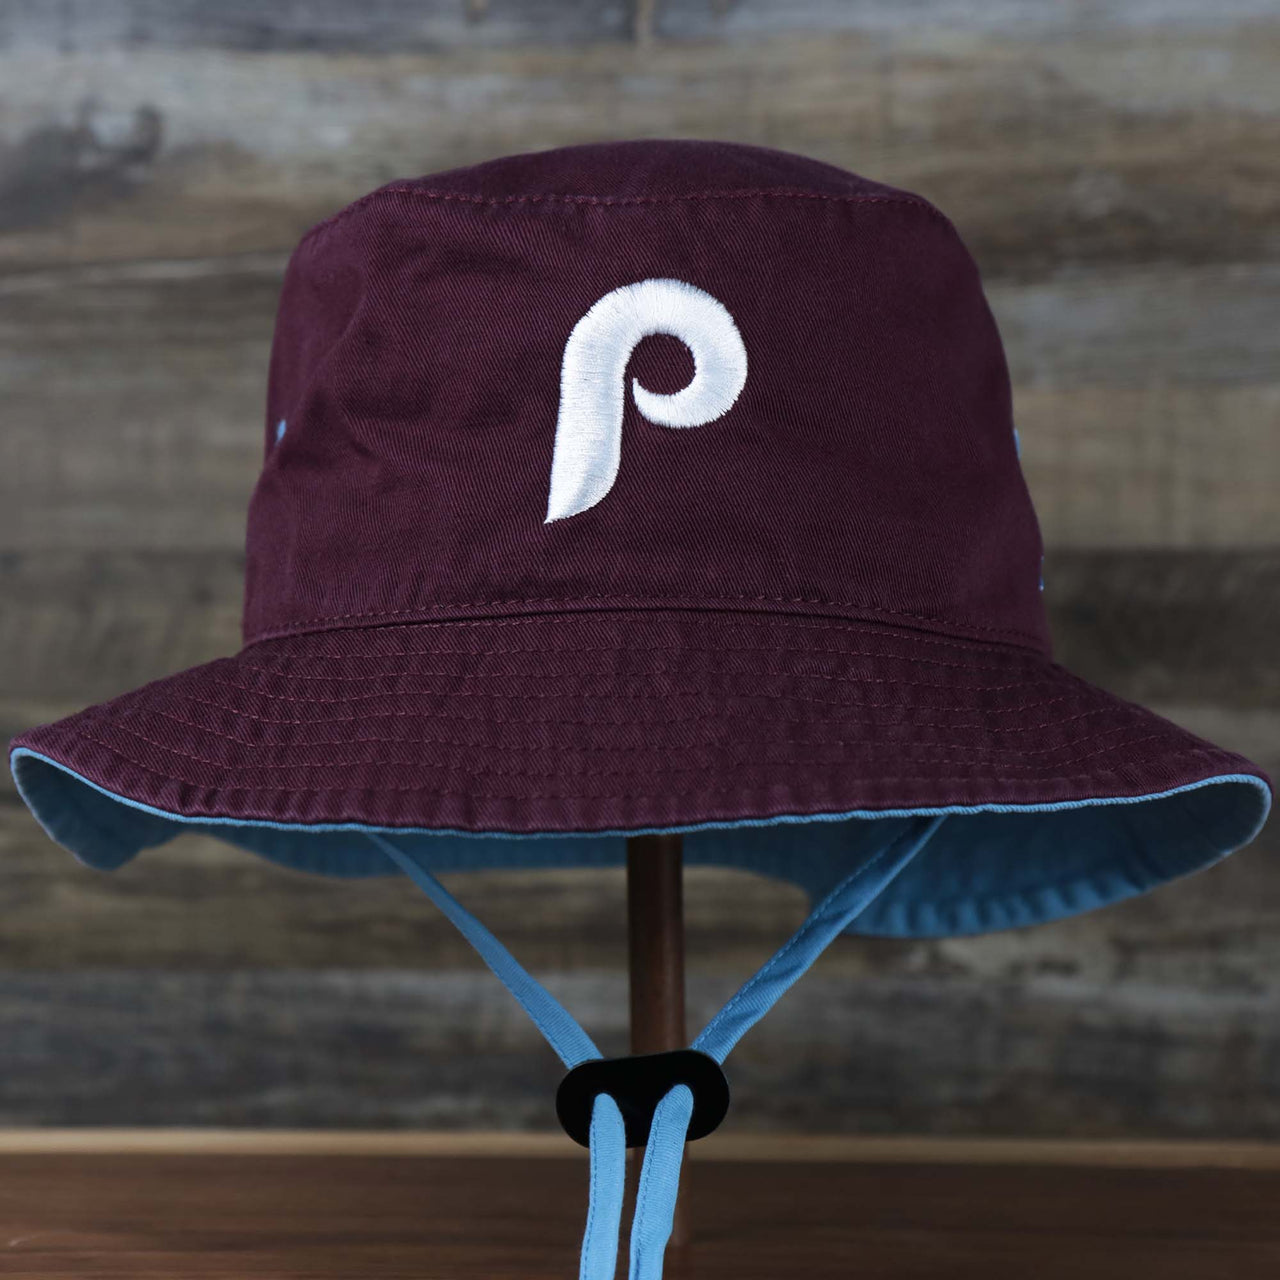 The front of the Cooperstown Philadelphia Phillies Vintage Bucket Hat | 47 Brand, Dark Maroon